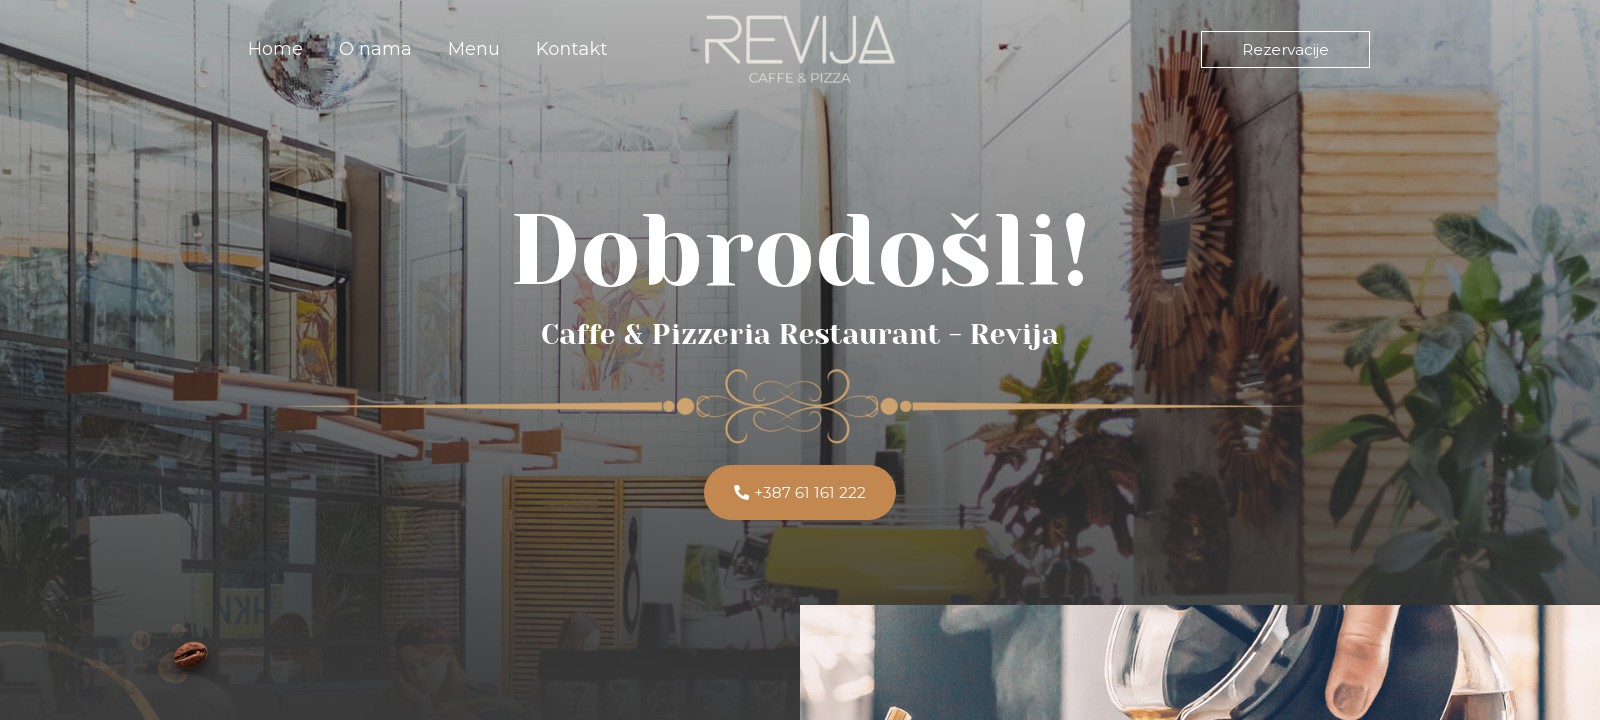 Caffe & Pizzeria Restaurant - Revija